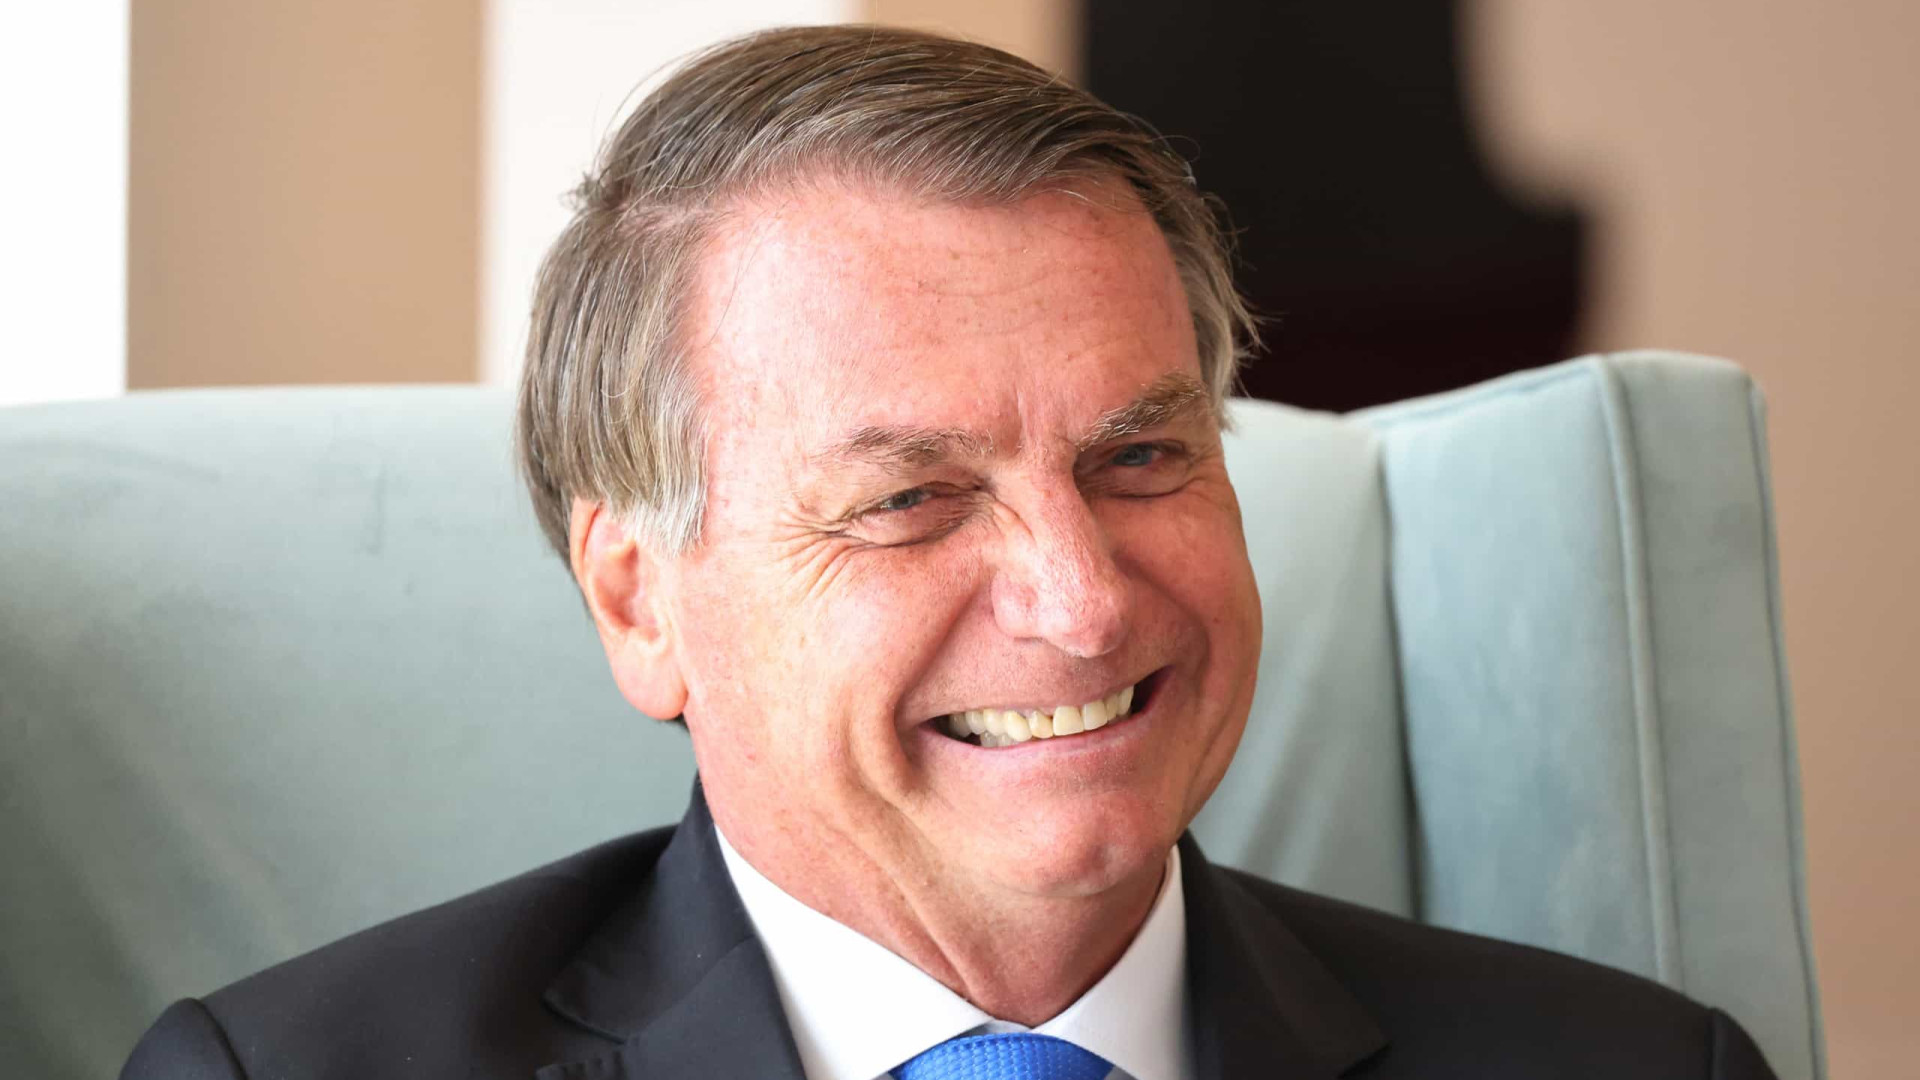 Eleições 2022: Bolsonaro diz que pretende ir a todos os debates